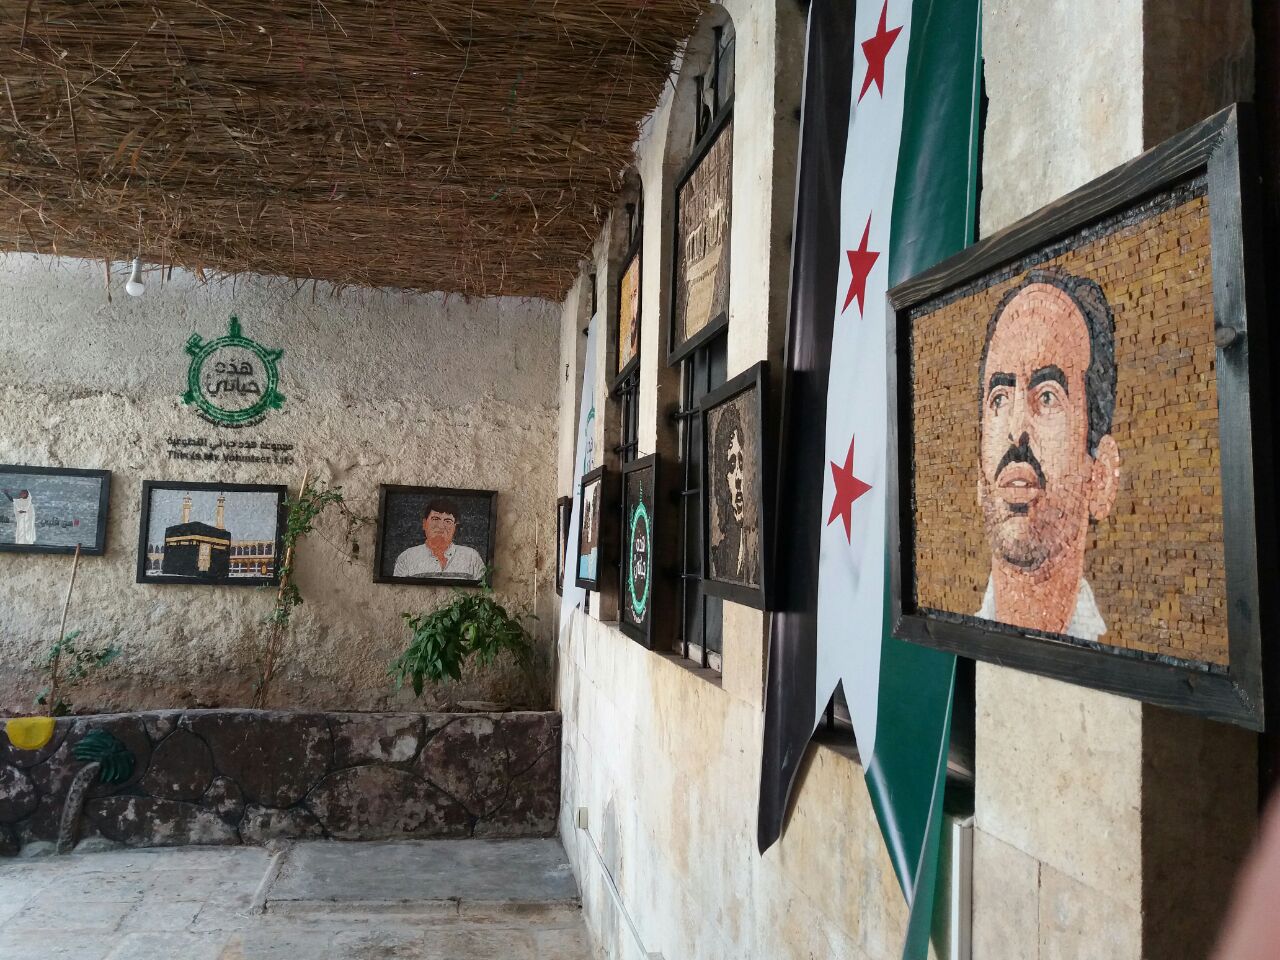 اختتمت في مدينة إدلب اليوم الخميس فعاليات معرض الفسيفساء الأول تحت عنوان: (صور من الذاكرة السورية)؛ إحياء لذكرى شخصيات ثورية تركت أثرًا كبيرًا في المجتمع.